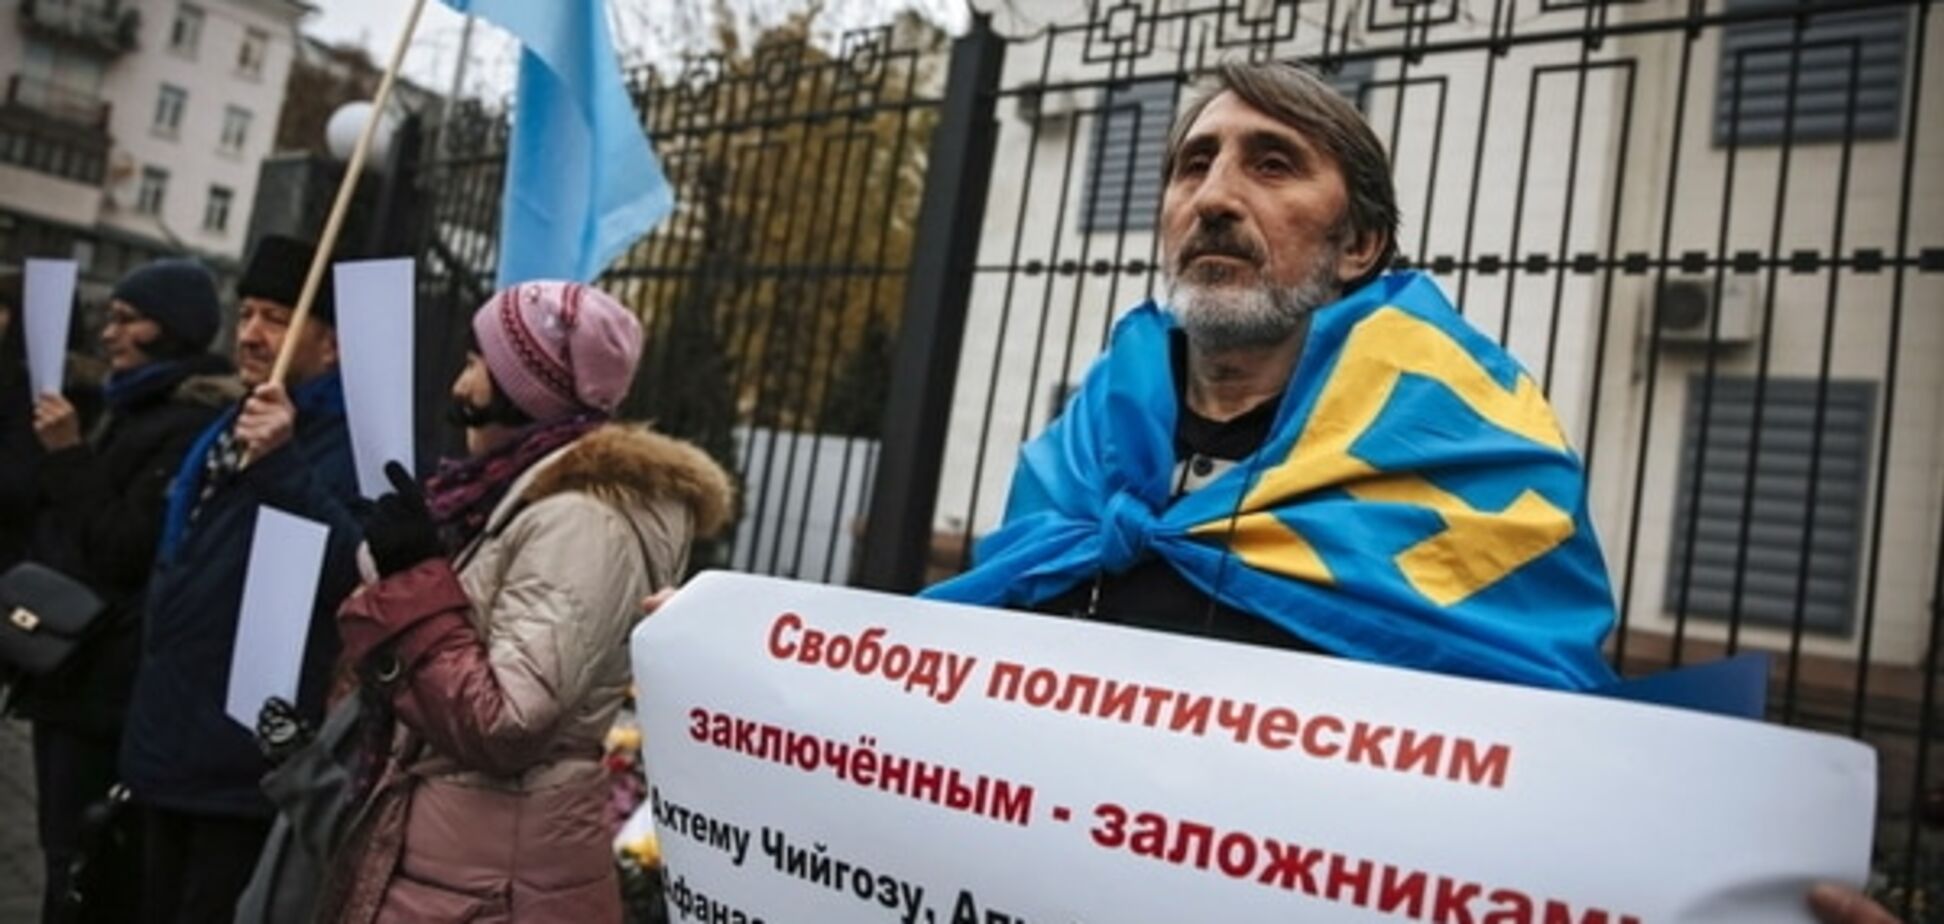 Крымские татары заявили о трех требованиях оккупантам в Крыму